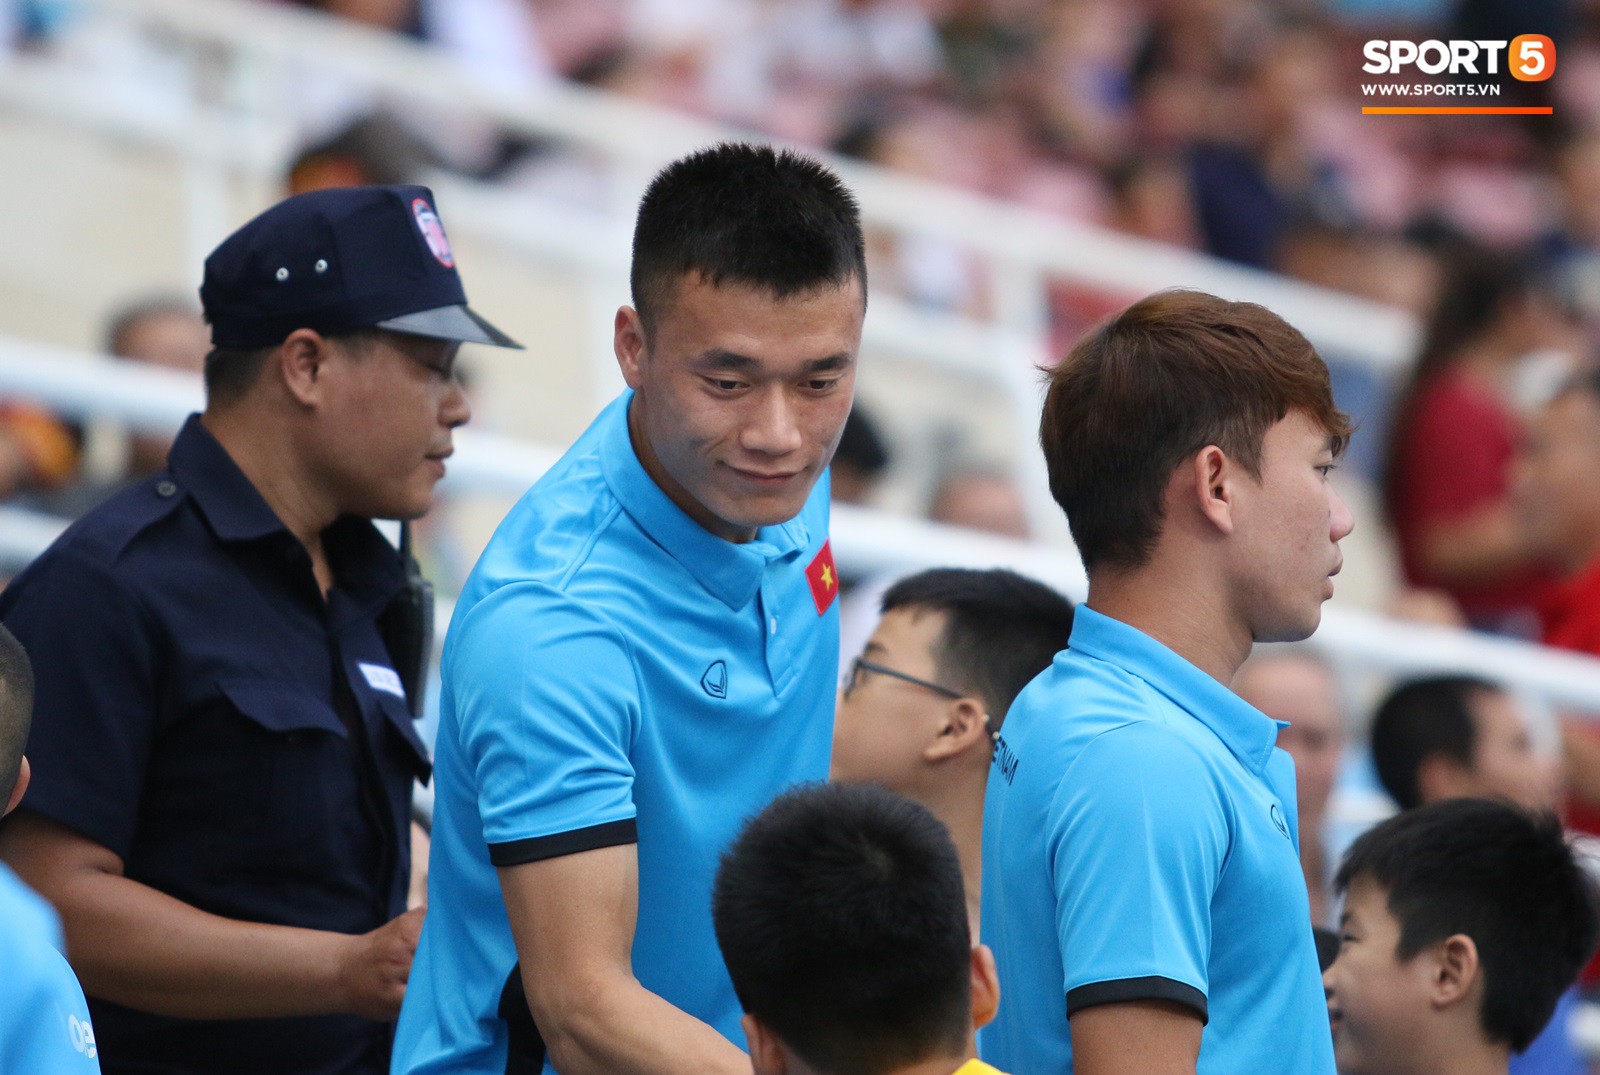 Những điều thú vị bạn có thể đã bỏ qua trên khán đài trong chiến thắng của U23 Việt Nam - Ảnh 6.